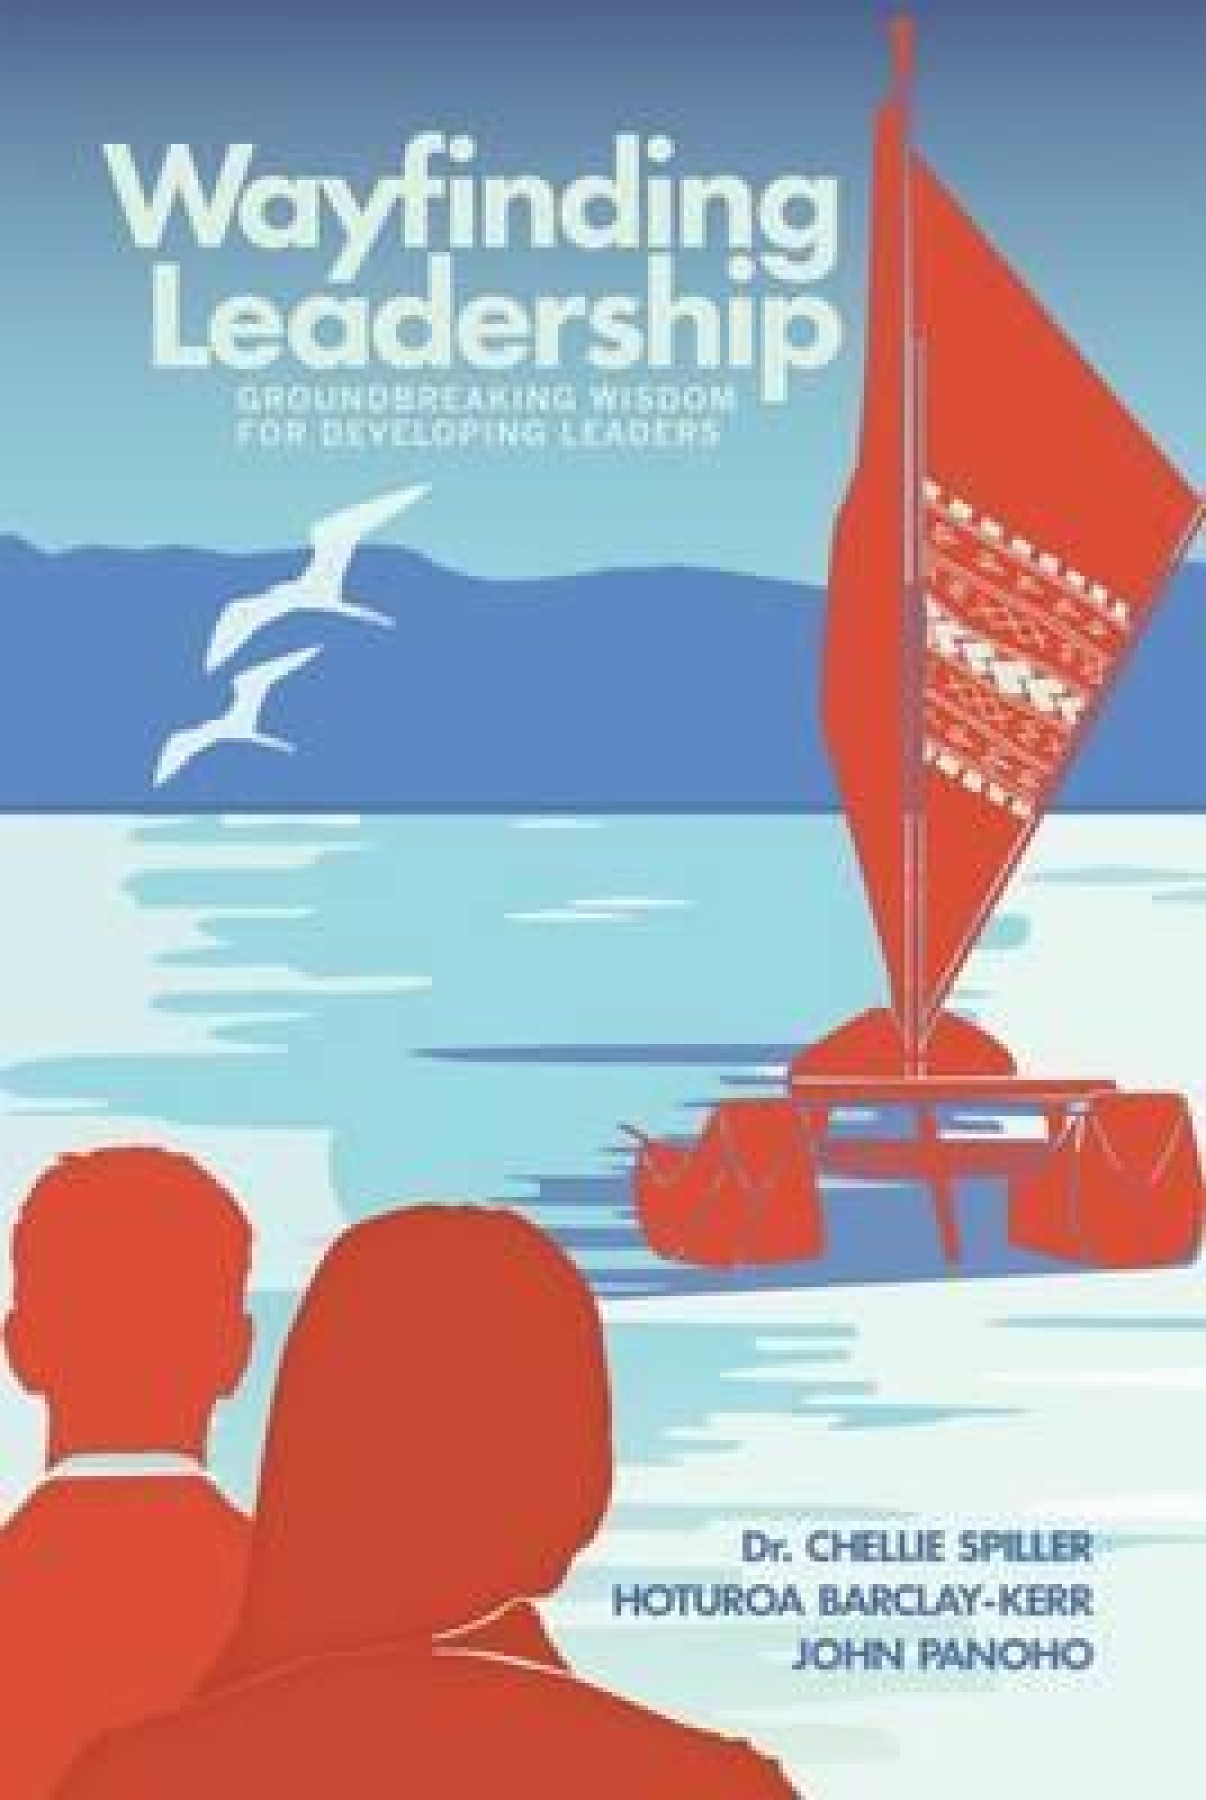 Wayfinding leadership: Groundbreaking wisdom for developing leaders